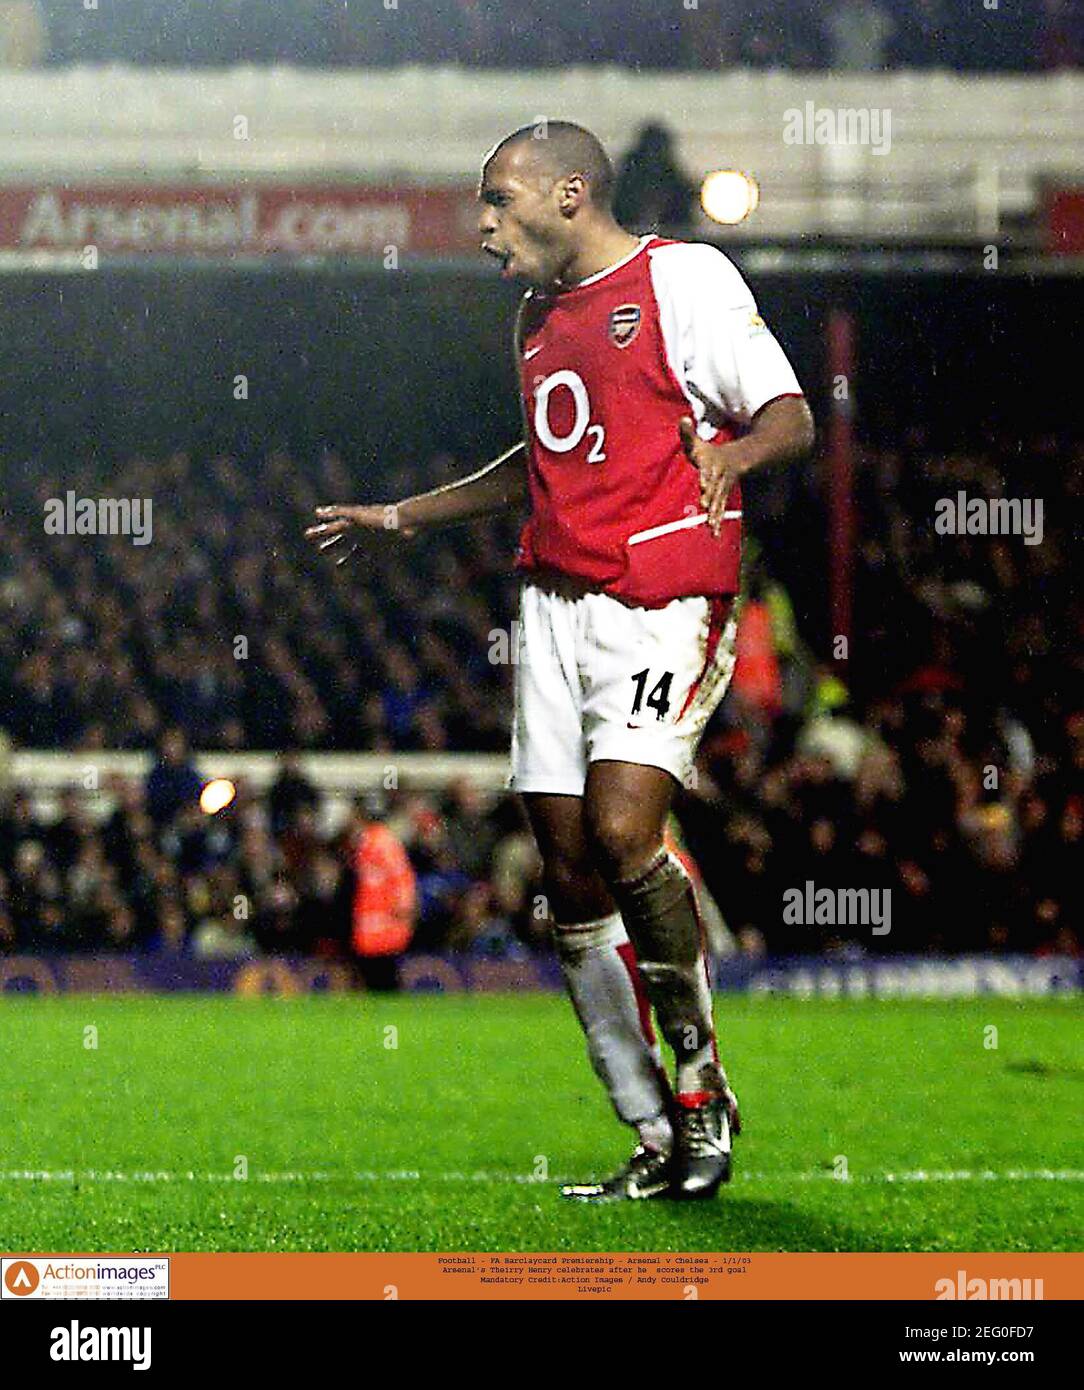 Fútbol - FA Barclaycard Premiership - Arsenal contra Chelsea - 1/1/03 Thierry Henry del Arsenal celebra después que él anota el tercero Objetivo crédito obligatorio:Imágenes de acción / Andy Couldridge Livepic